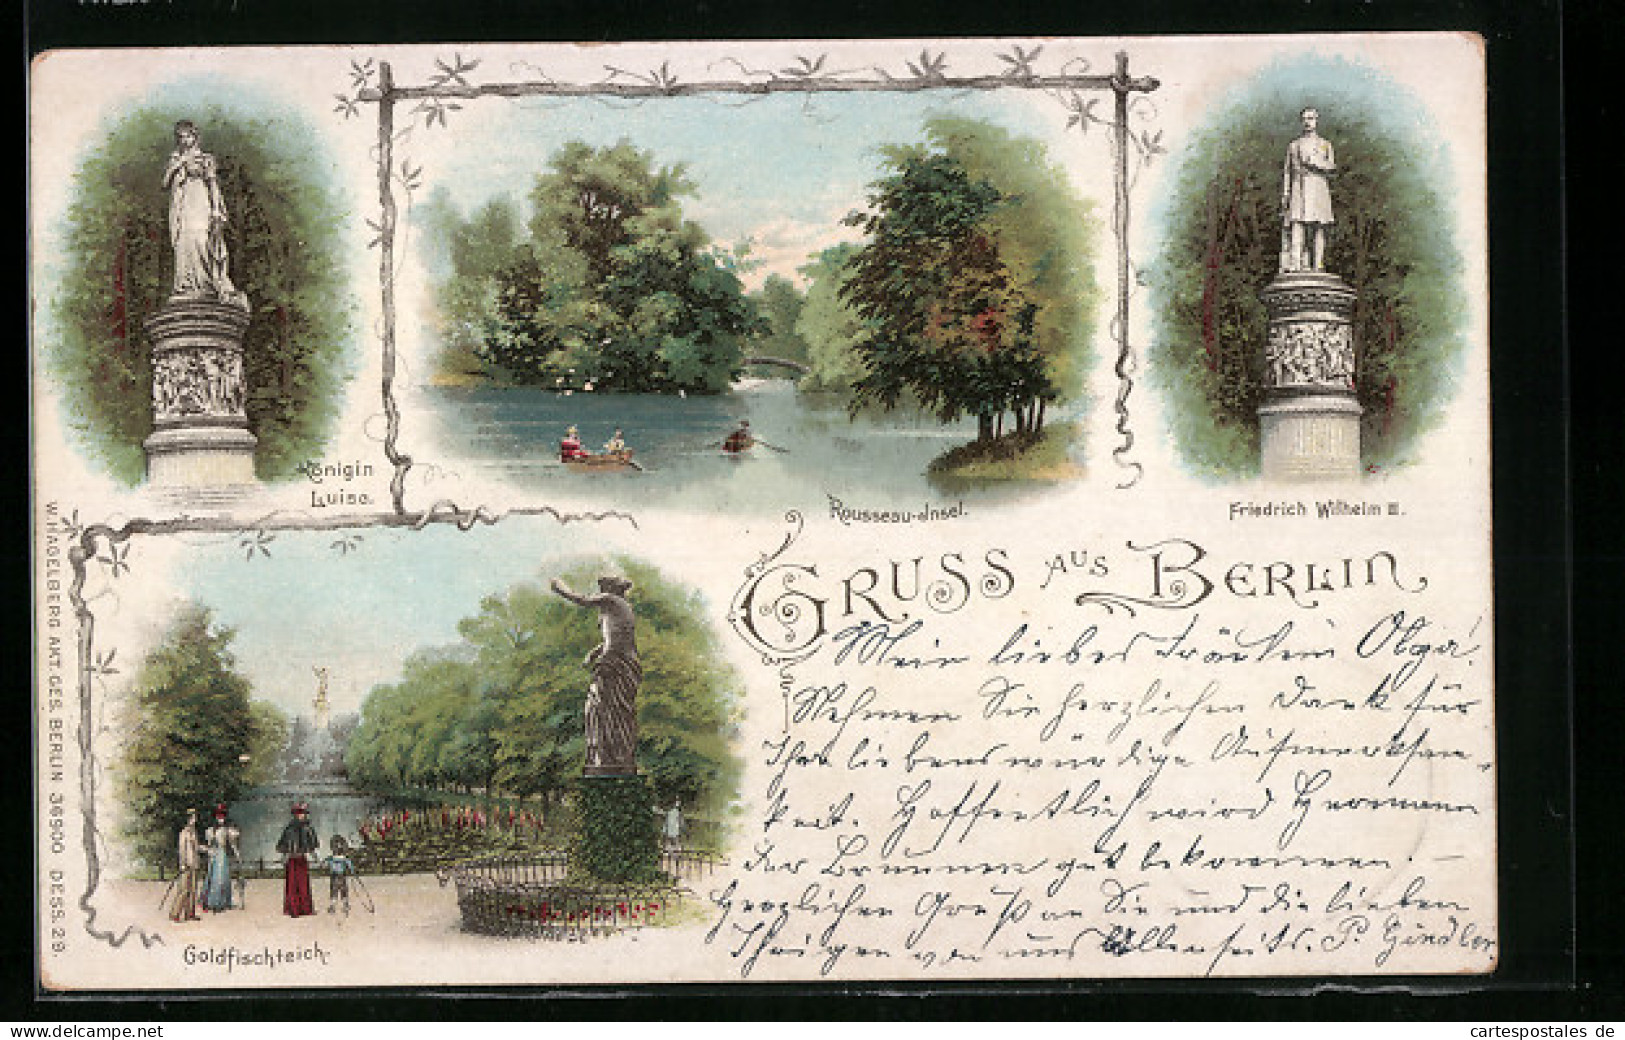 Lithographie Berlin-Tiergarten, Rousseau-Insel, Königin Luise, Friedrich Wilhelm III.  - Tiergarten